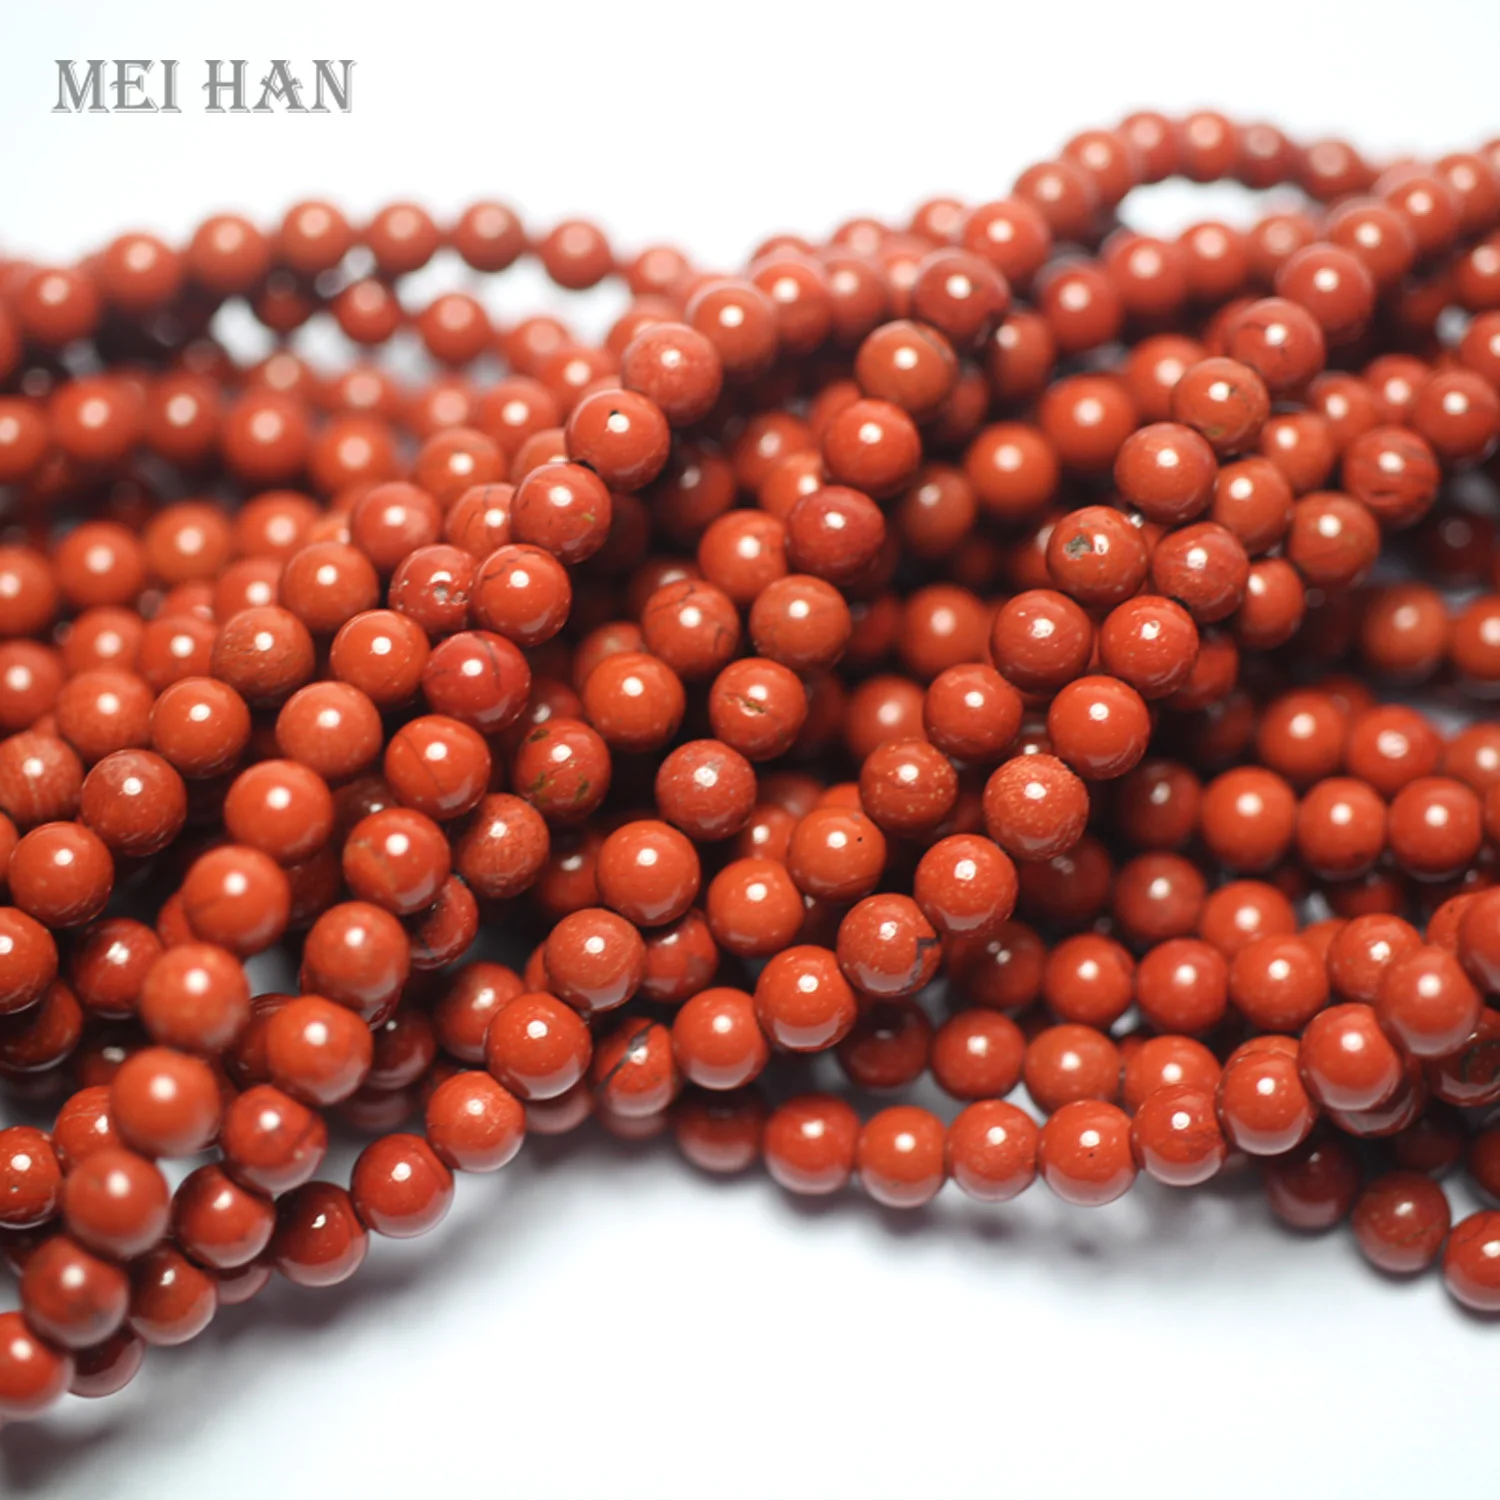 Meihan Gratis verzending Natuurlijke rode jaspis 4-5mm stenen kralen gladde ronde kralen voor het maken van sieraden design2